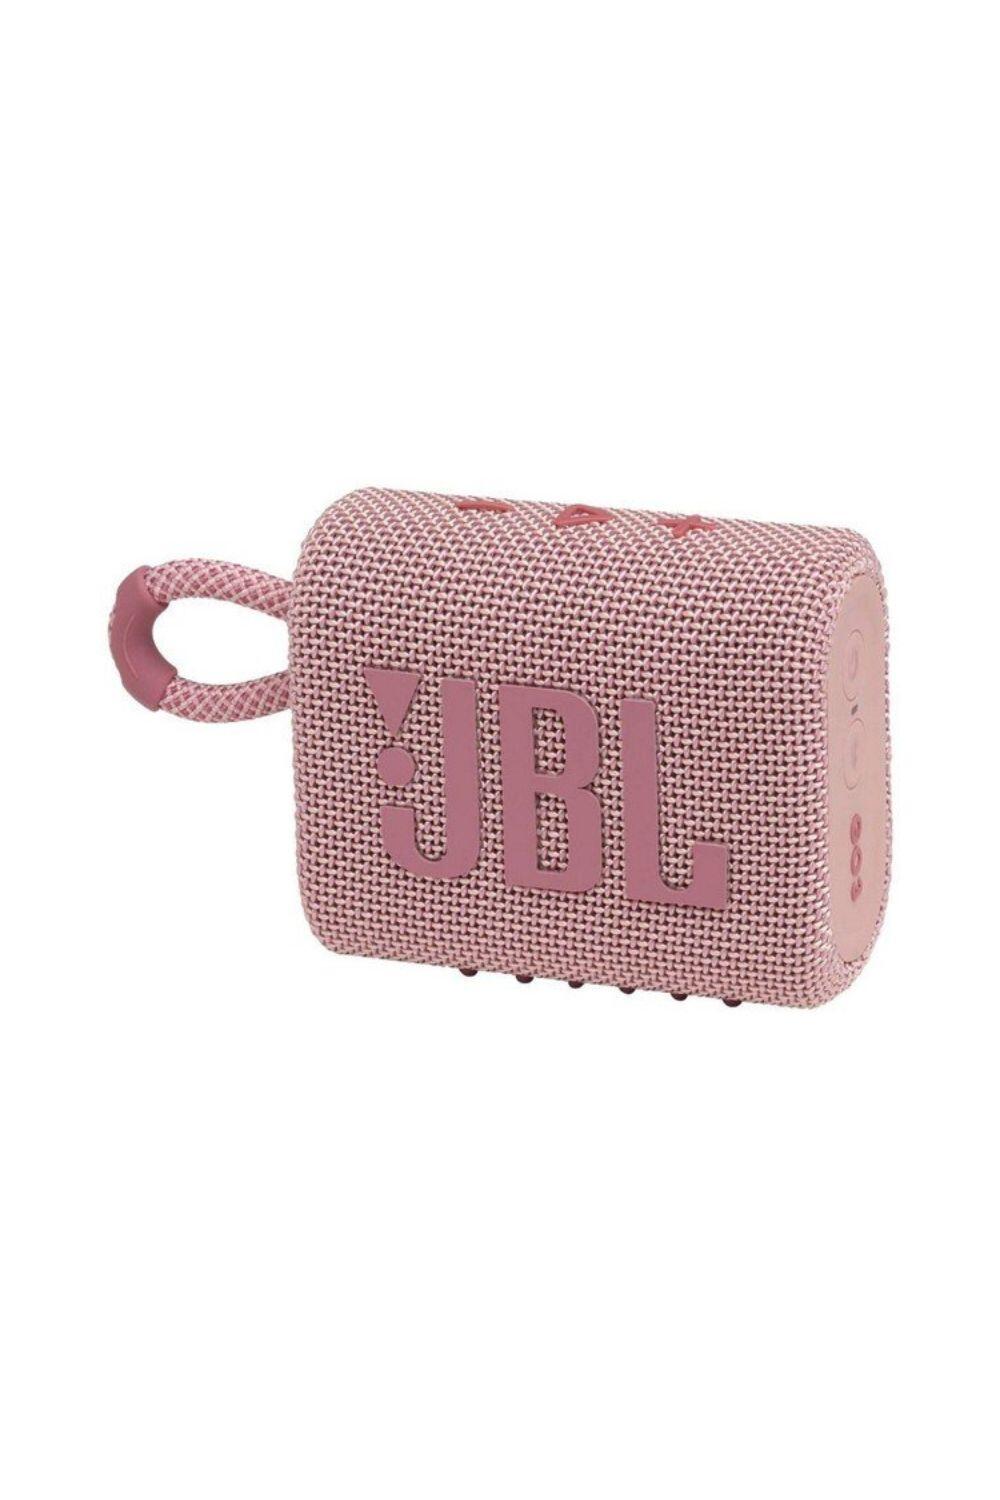 JBL GO 3 Waterproof/Dustproof Wireless Bluetooth Speaker 1/6